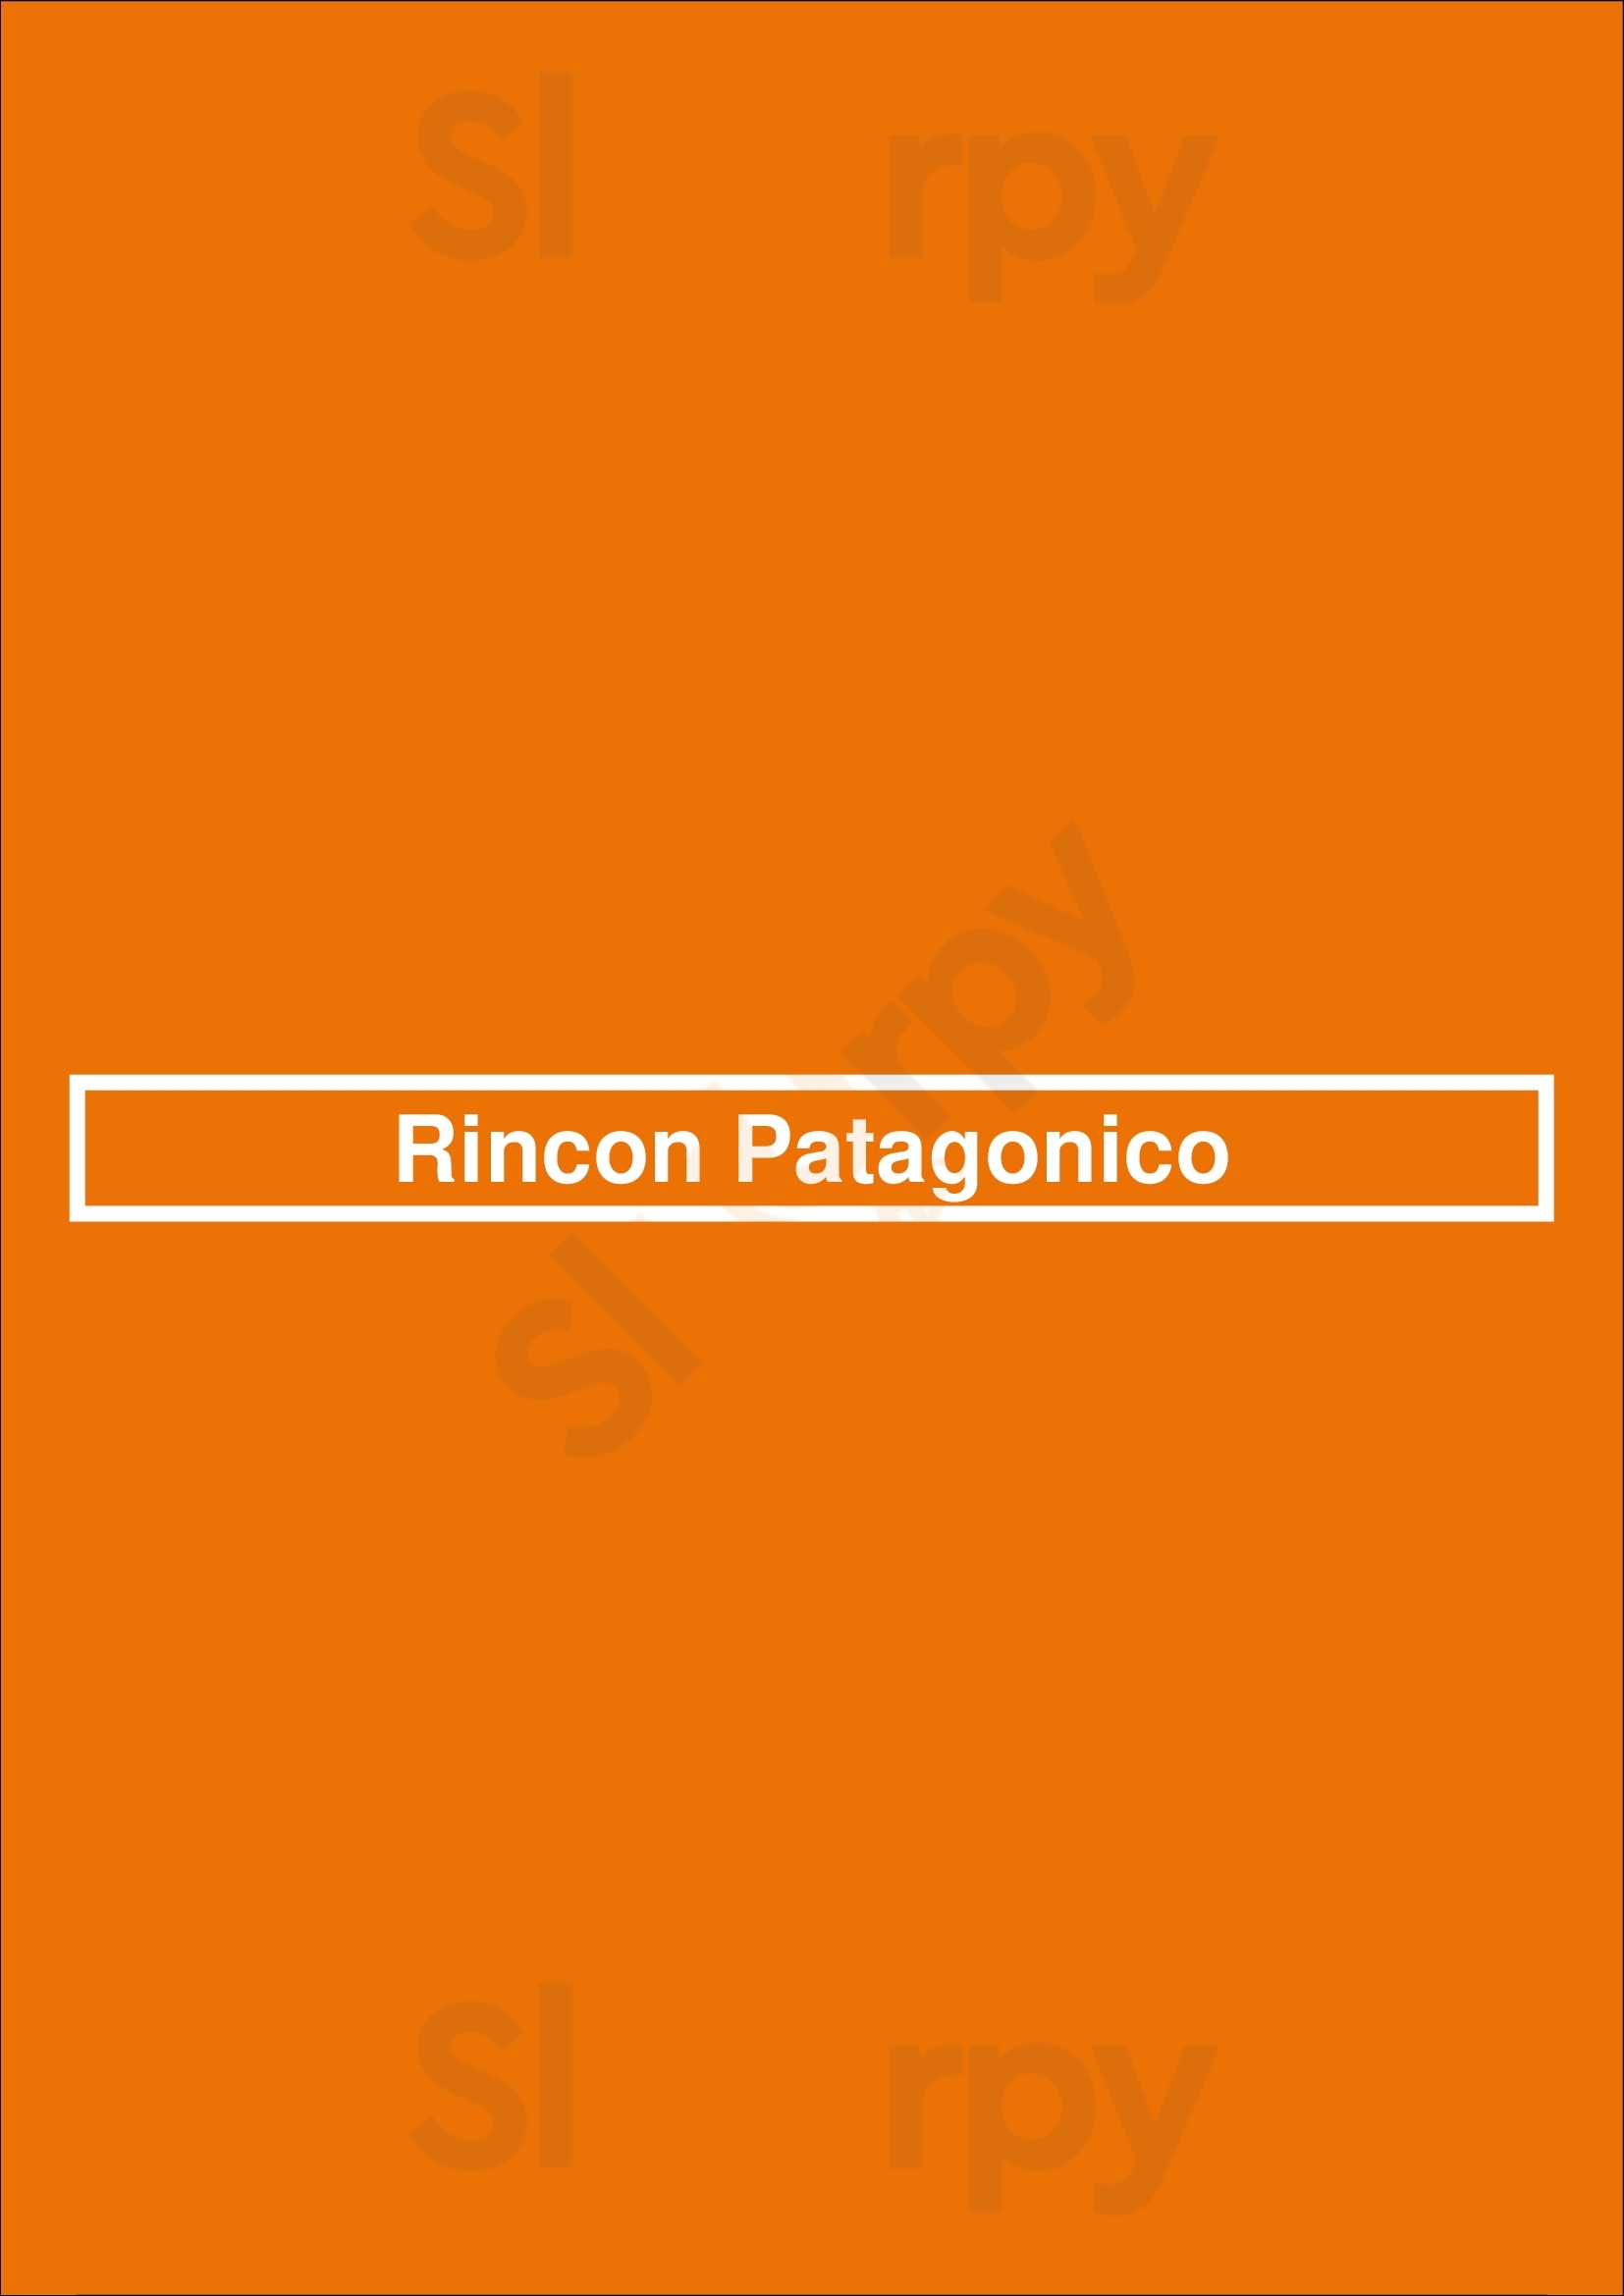 Rincón Patagónico San Carlos de Bariloche Menu - 1